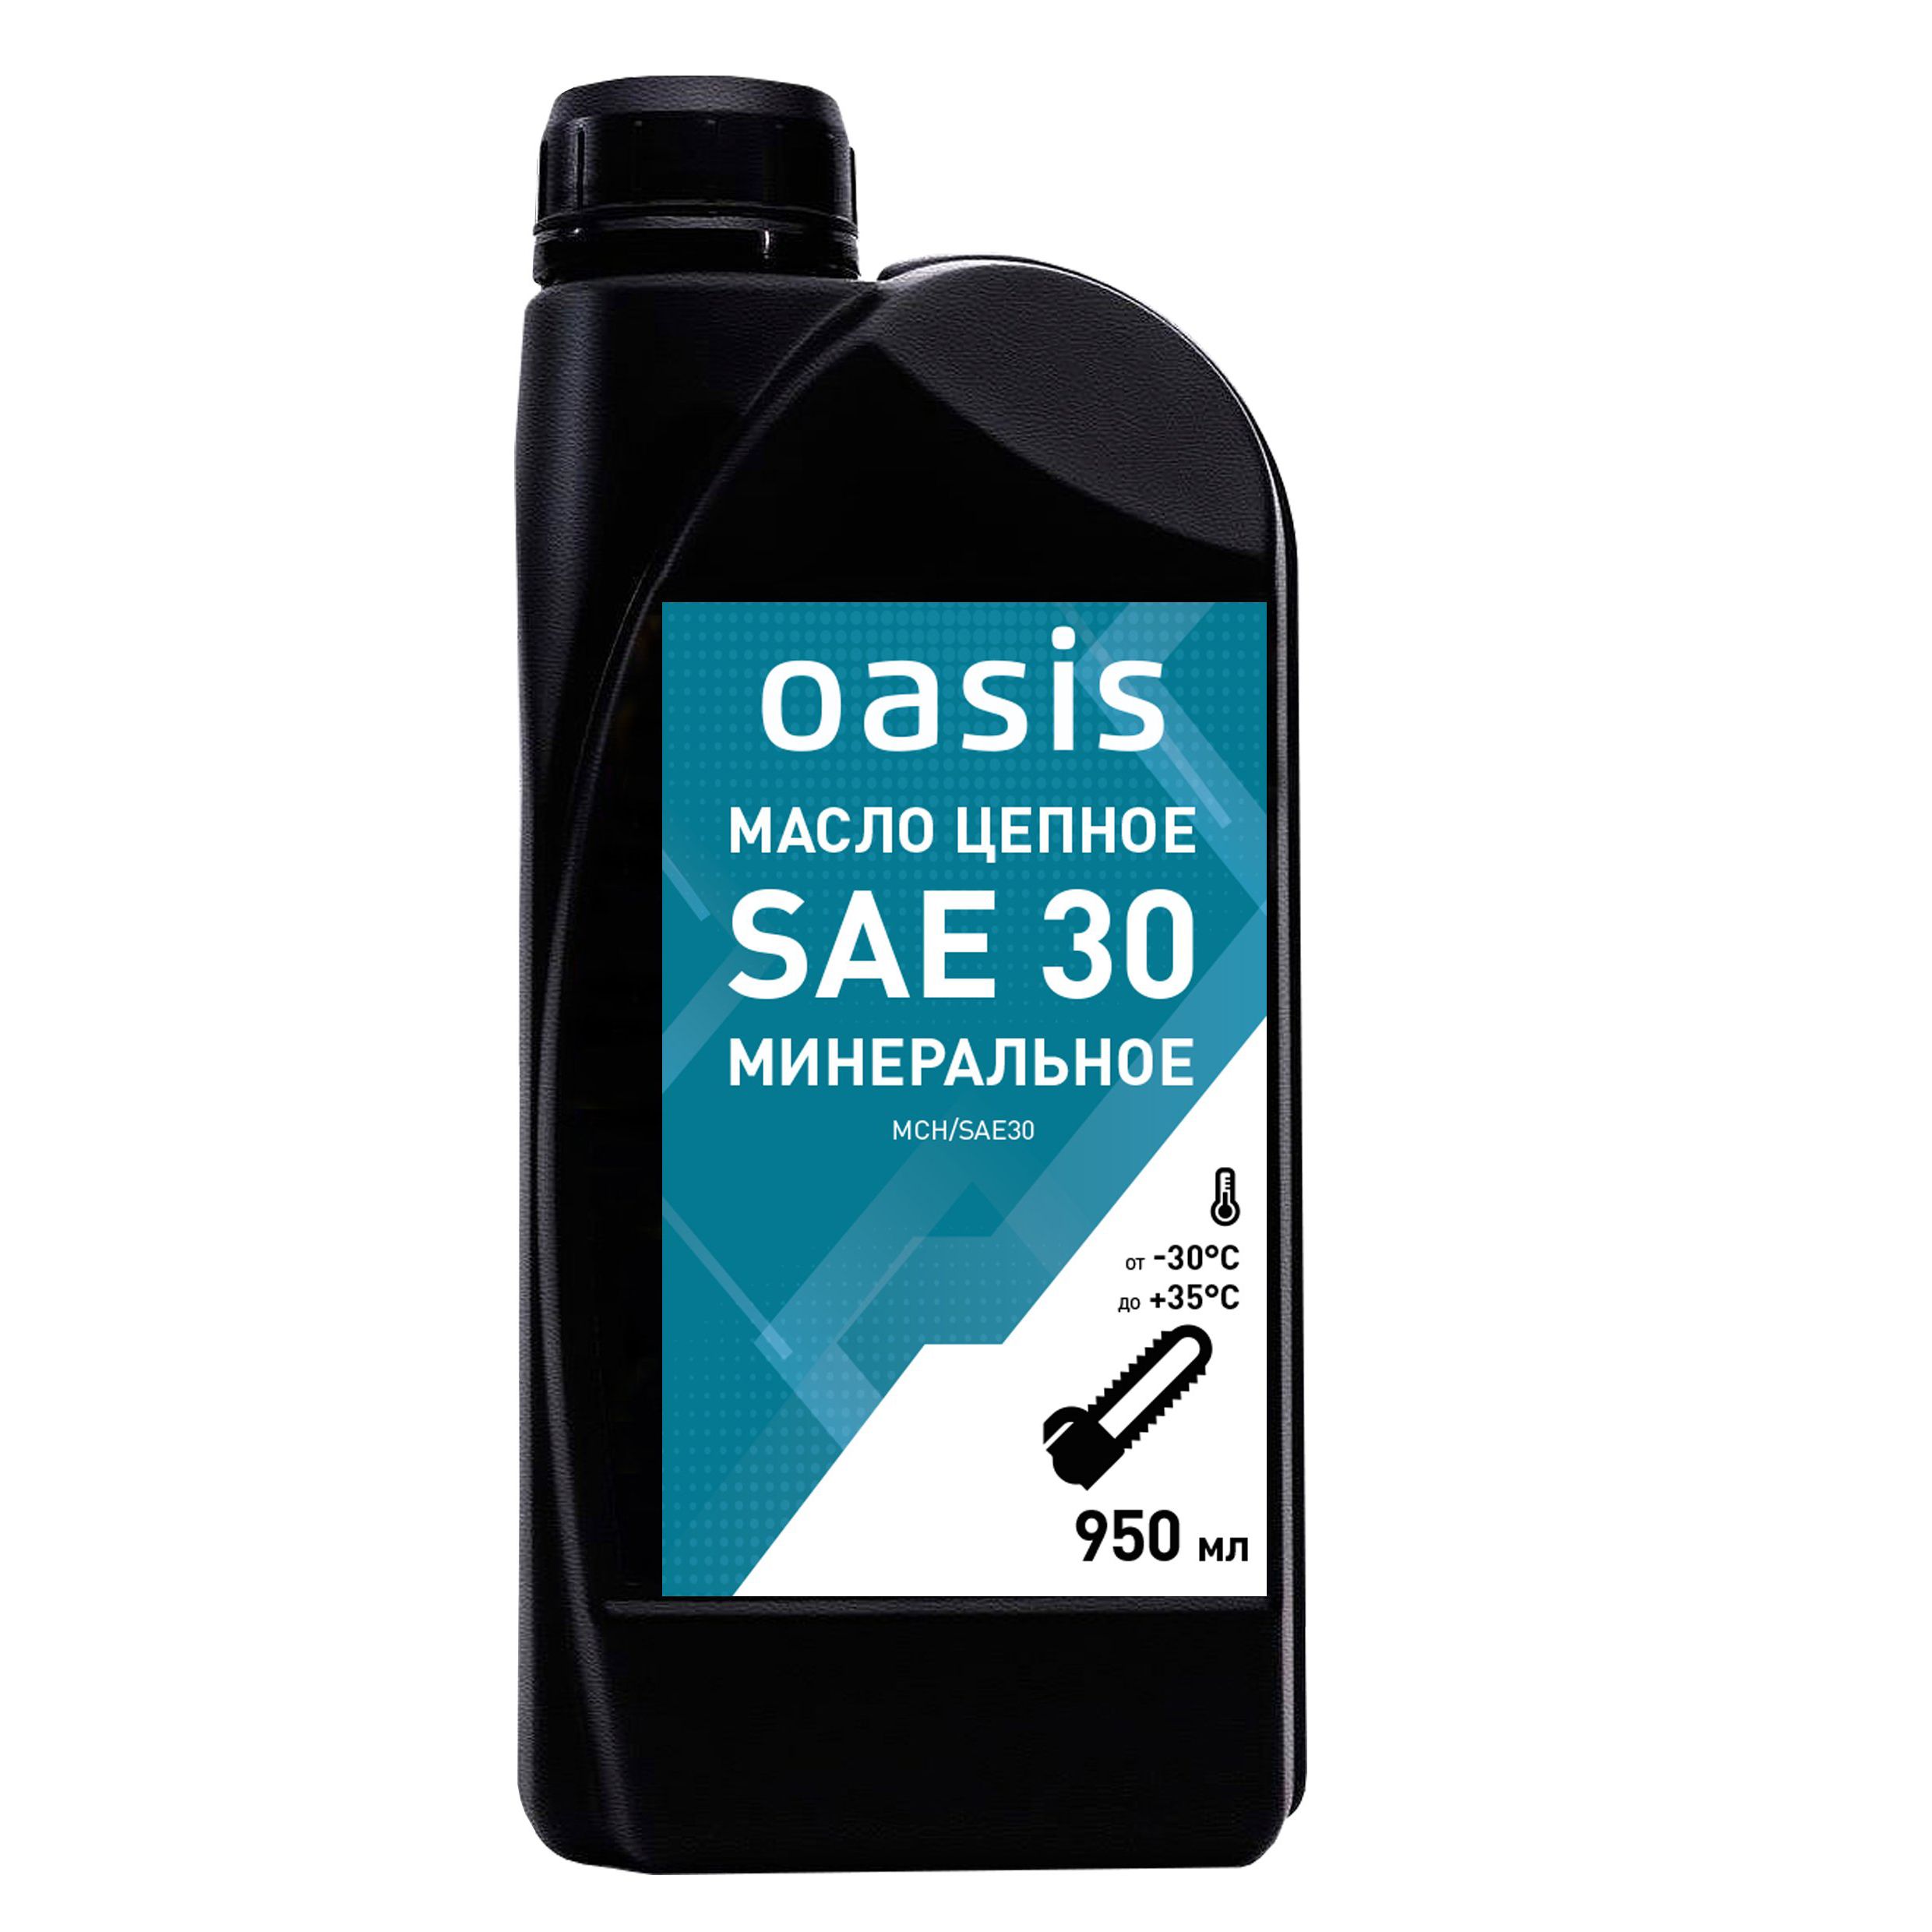 Масло цепное минеральное SAE 30 Oasis MCH/SAE30OASIS 4640130950521